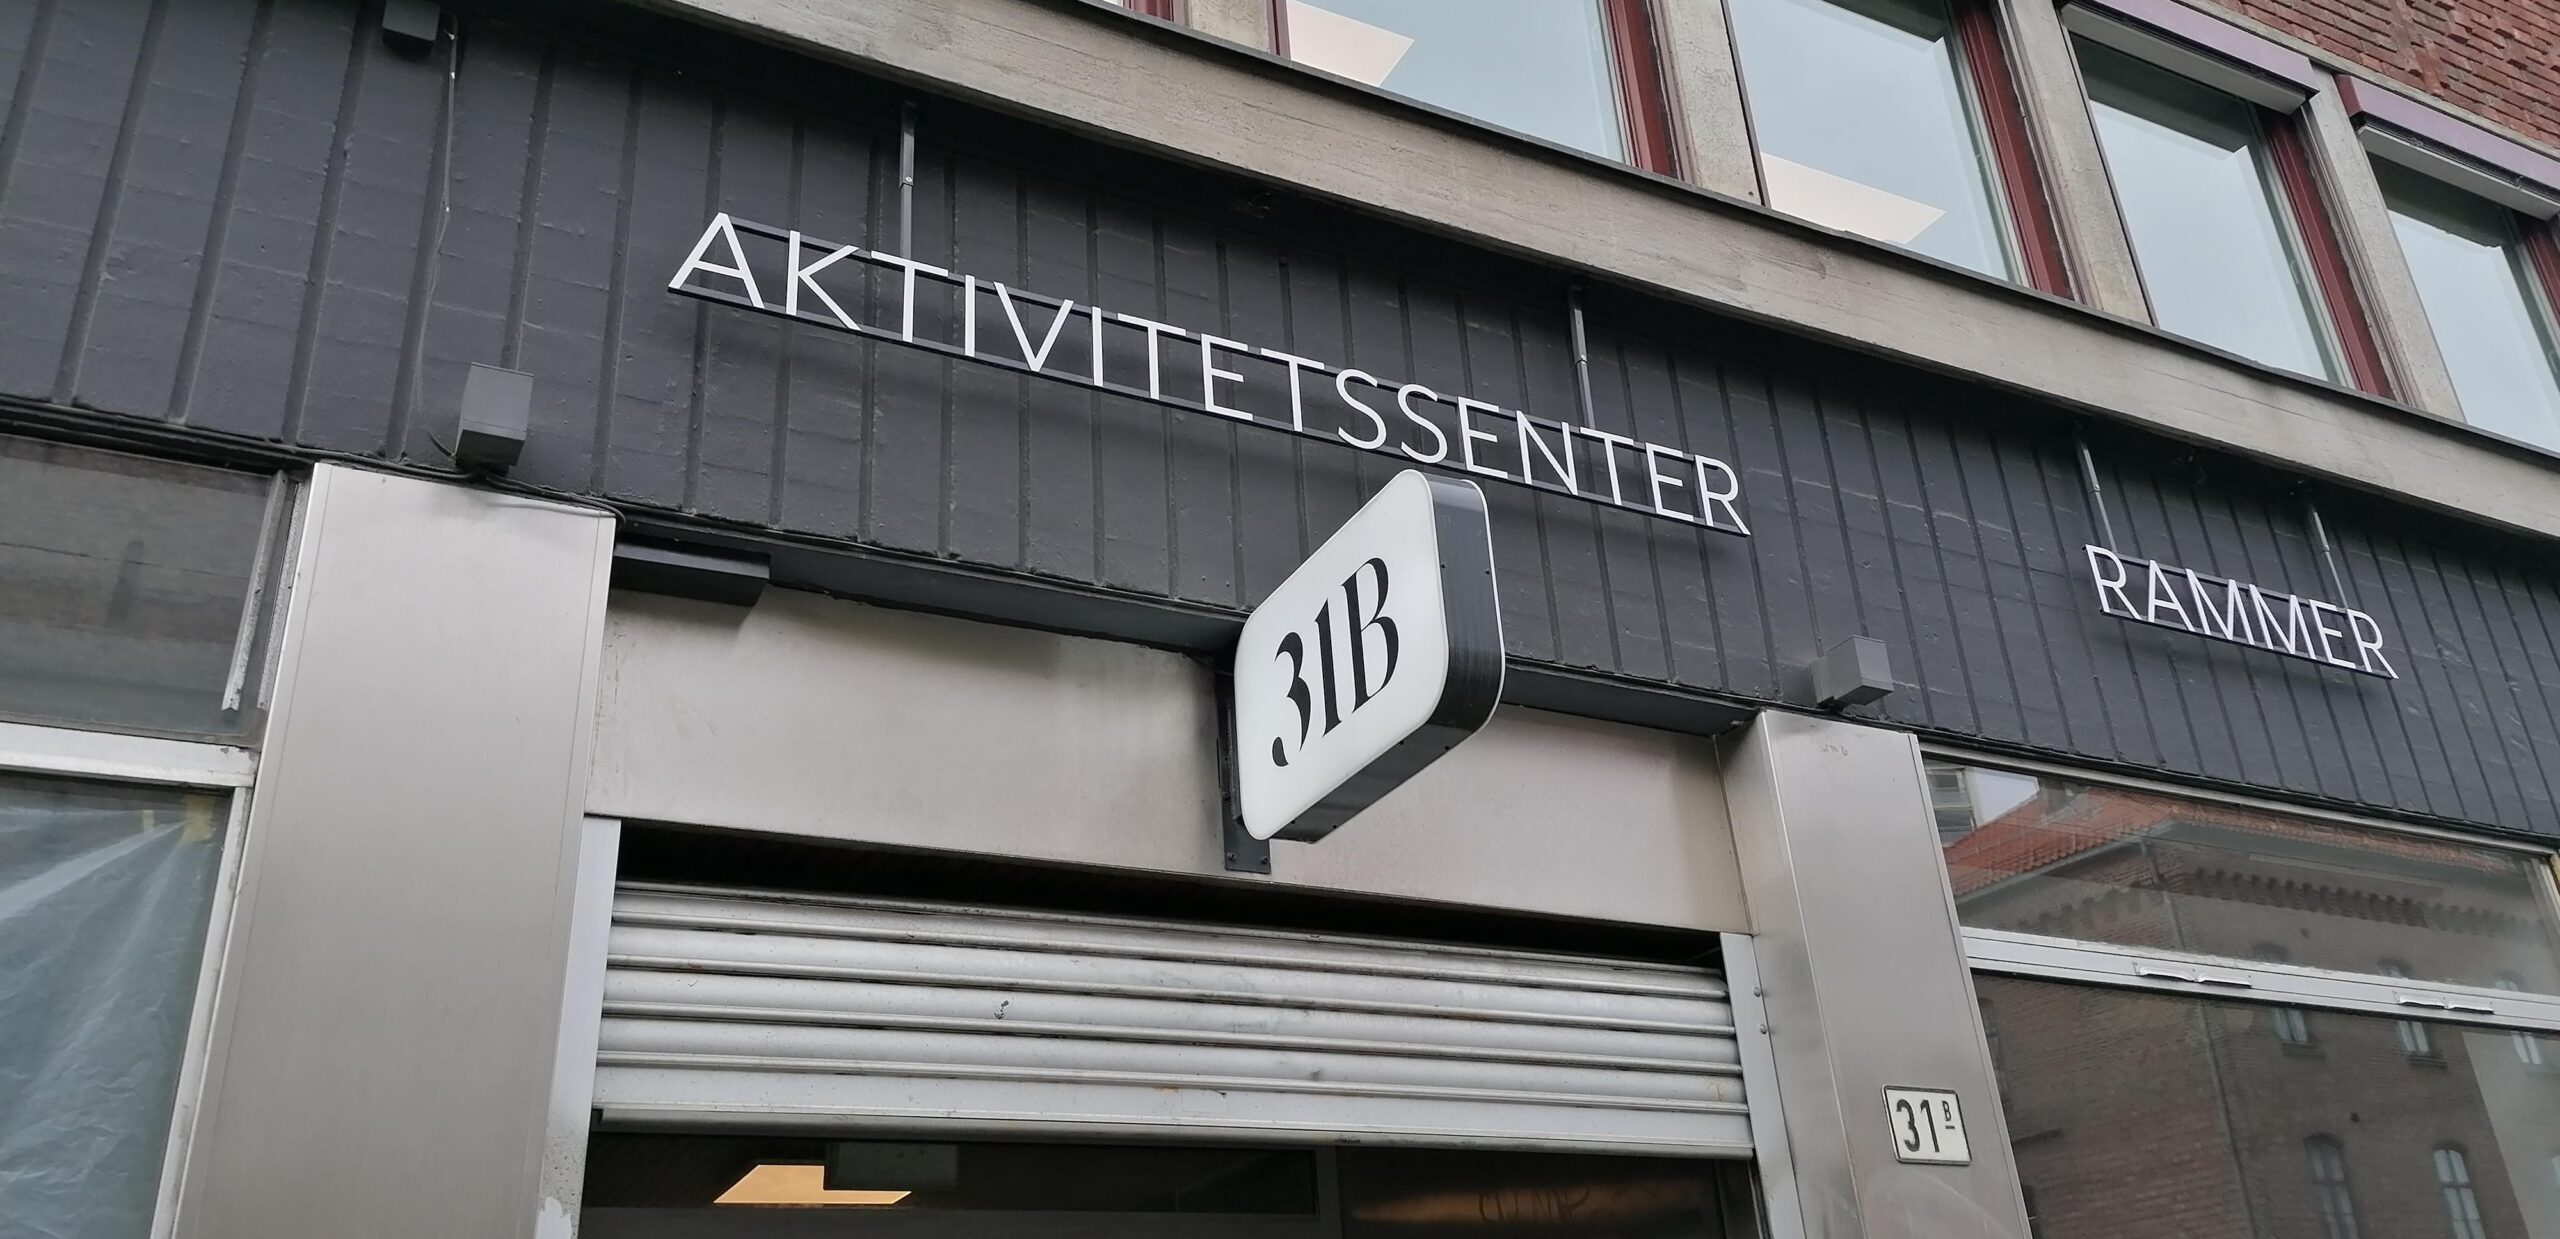 Aktivitetssenteret 31 B i Oslo